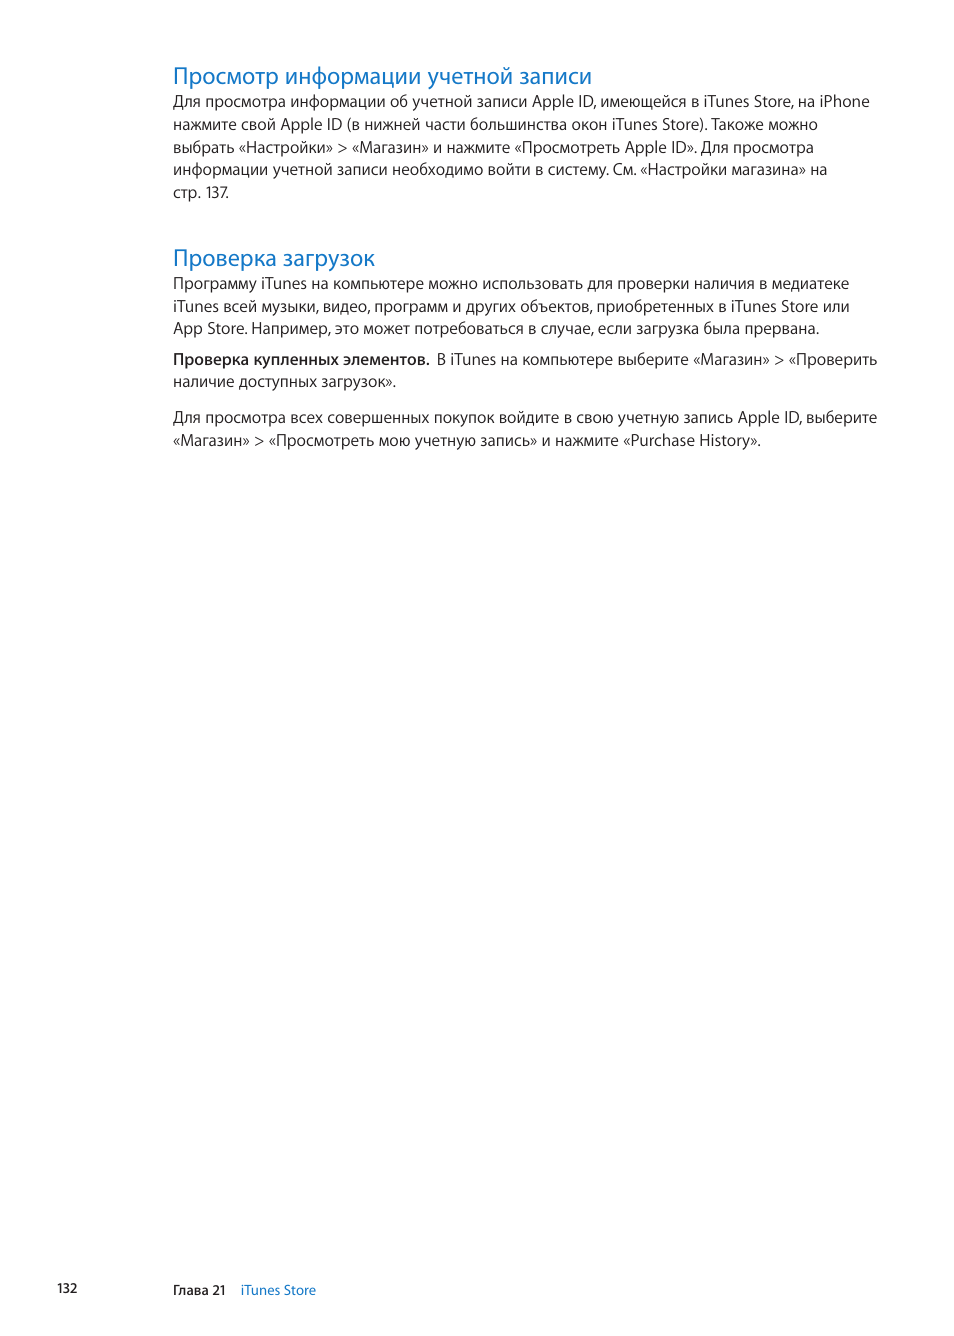 Просмотр информации учетной записи, Проверка загрузок | Инструкция по эксплуатации Apple iPhone iOS 5.1 | Страница 132 / 204